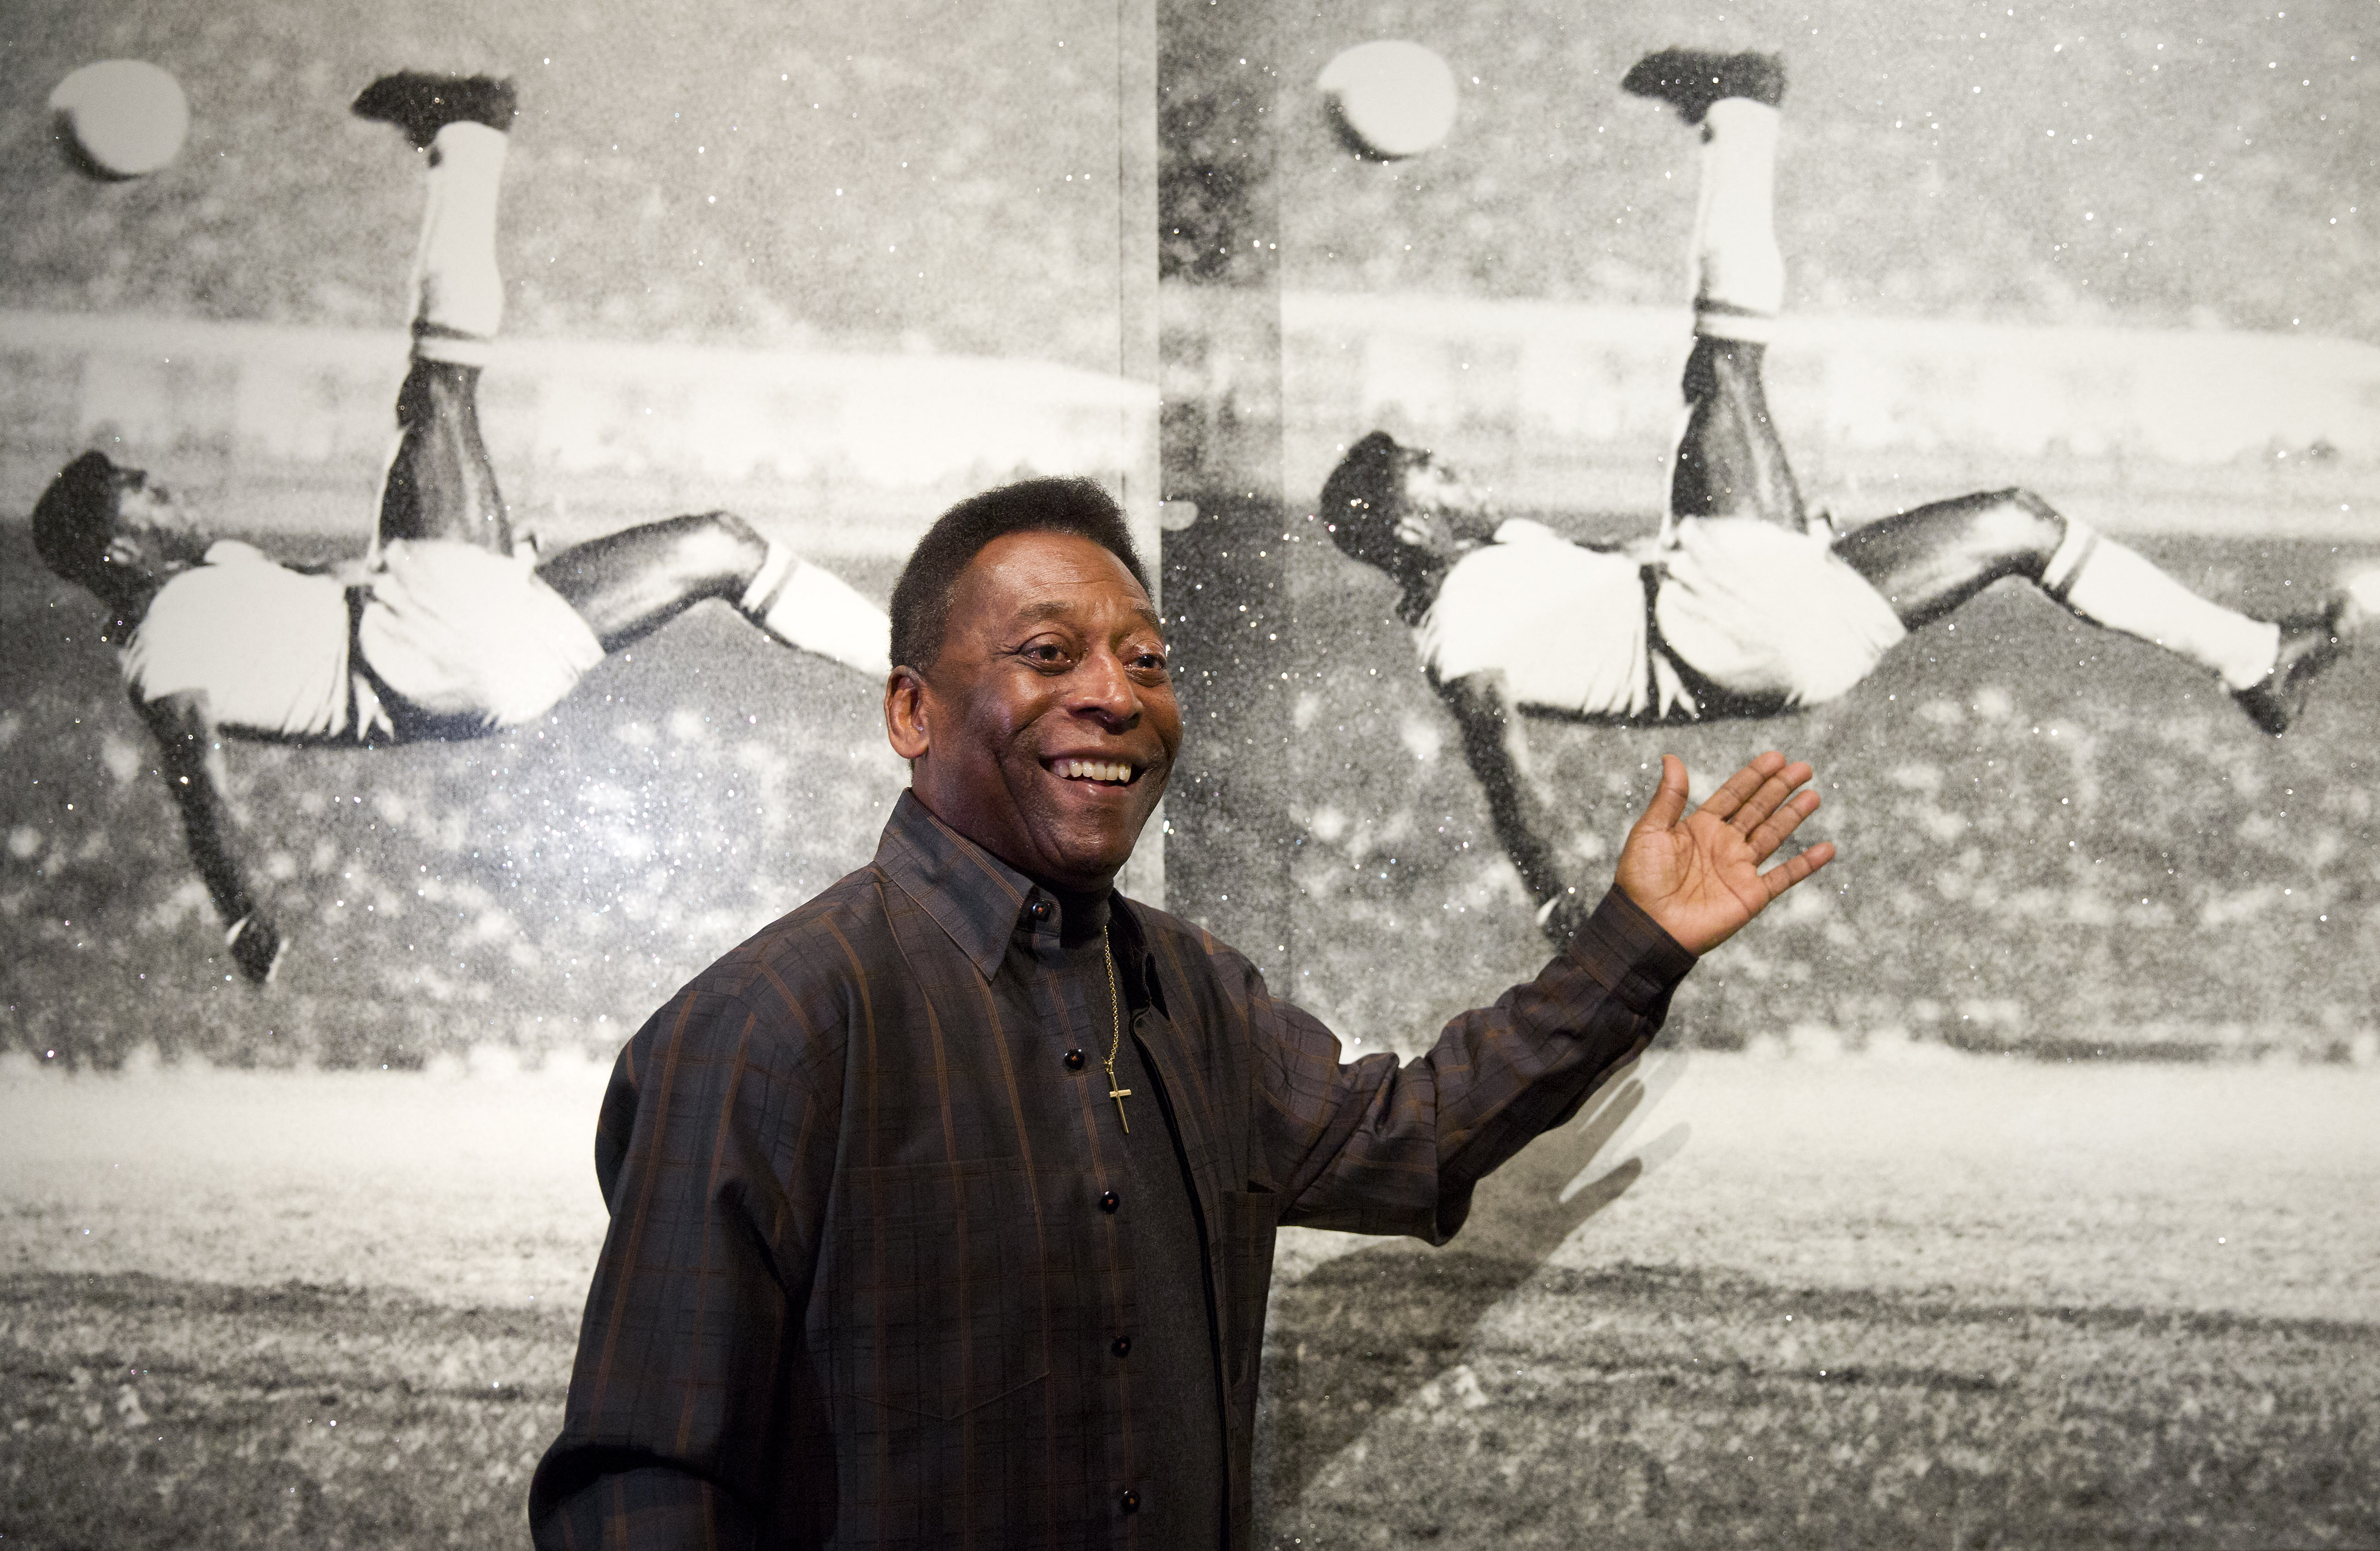 El día en que Pelé paró una sangrienta guerra civil en África